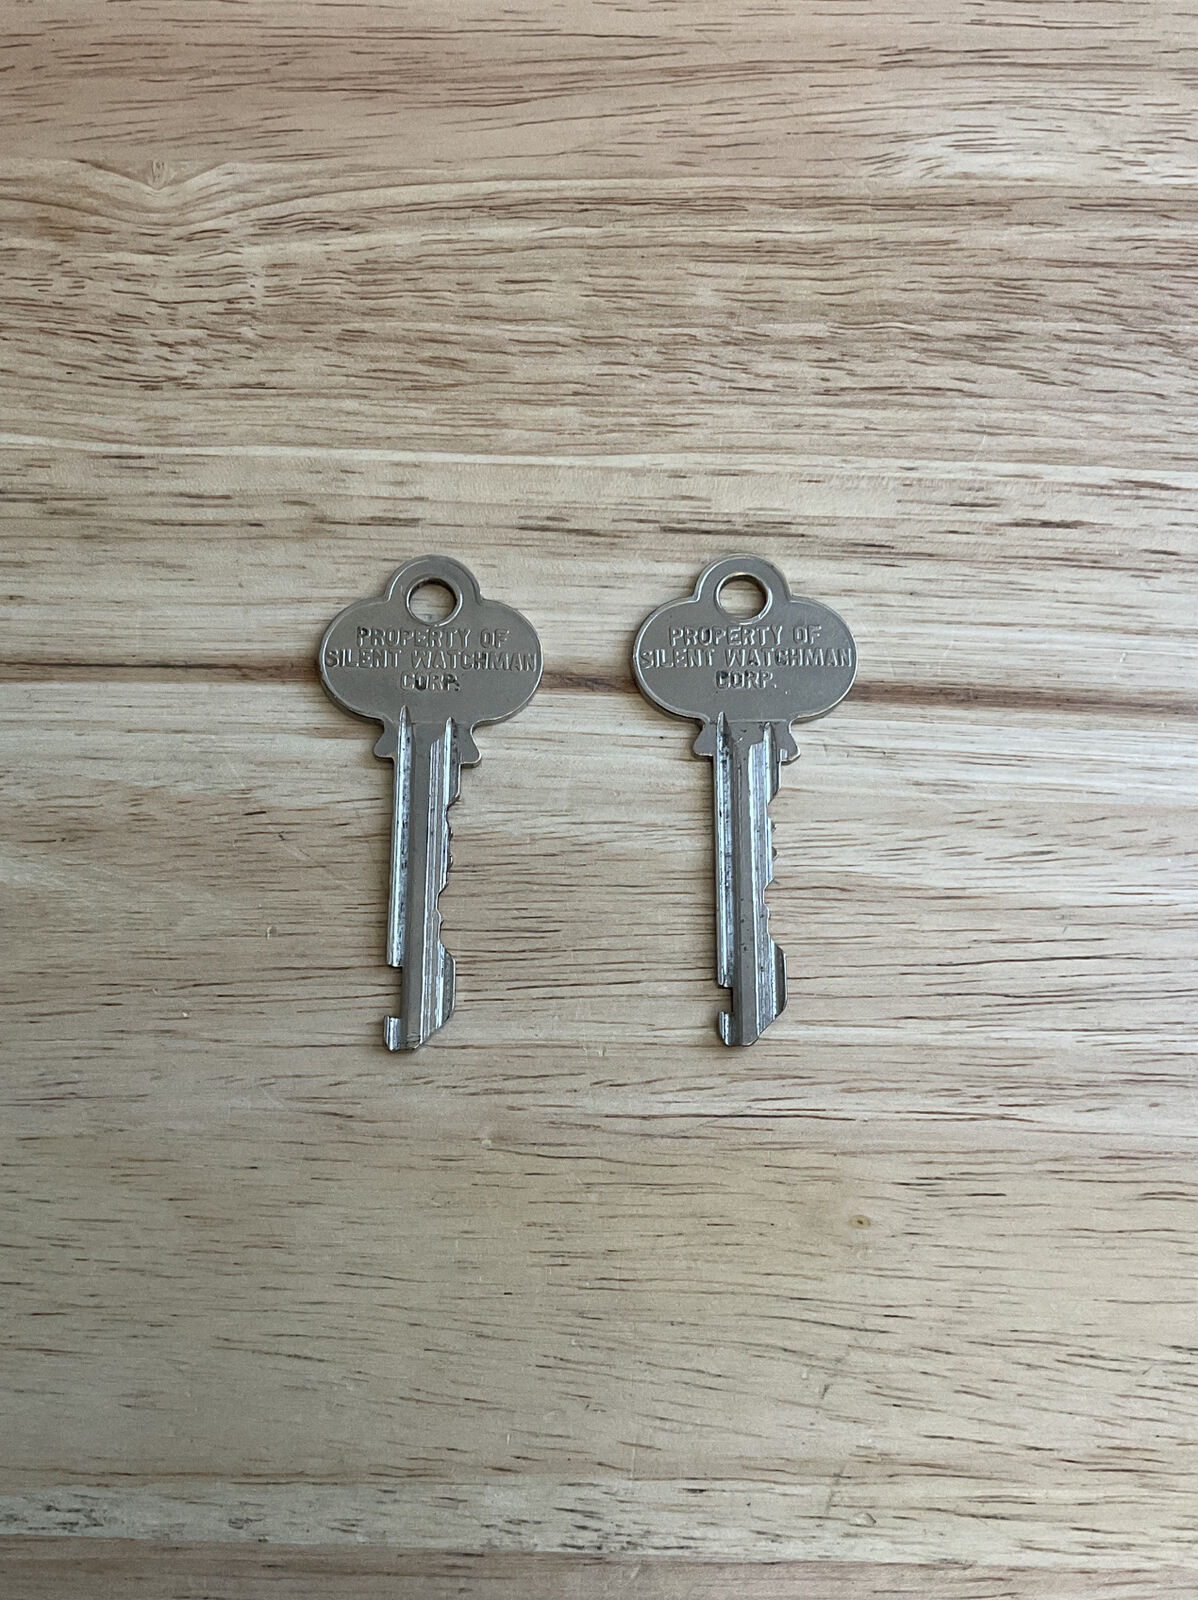 2 Silent Watchman Keys